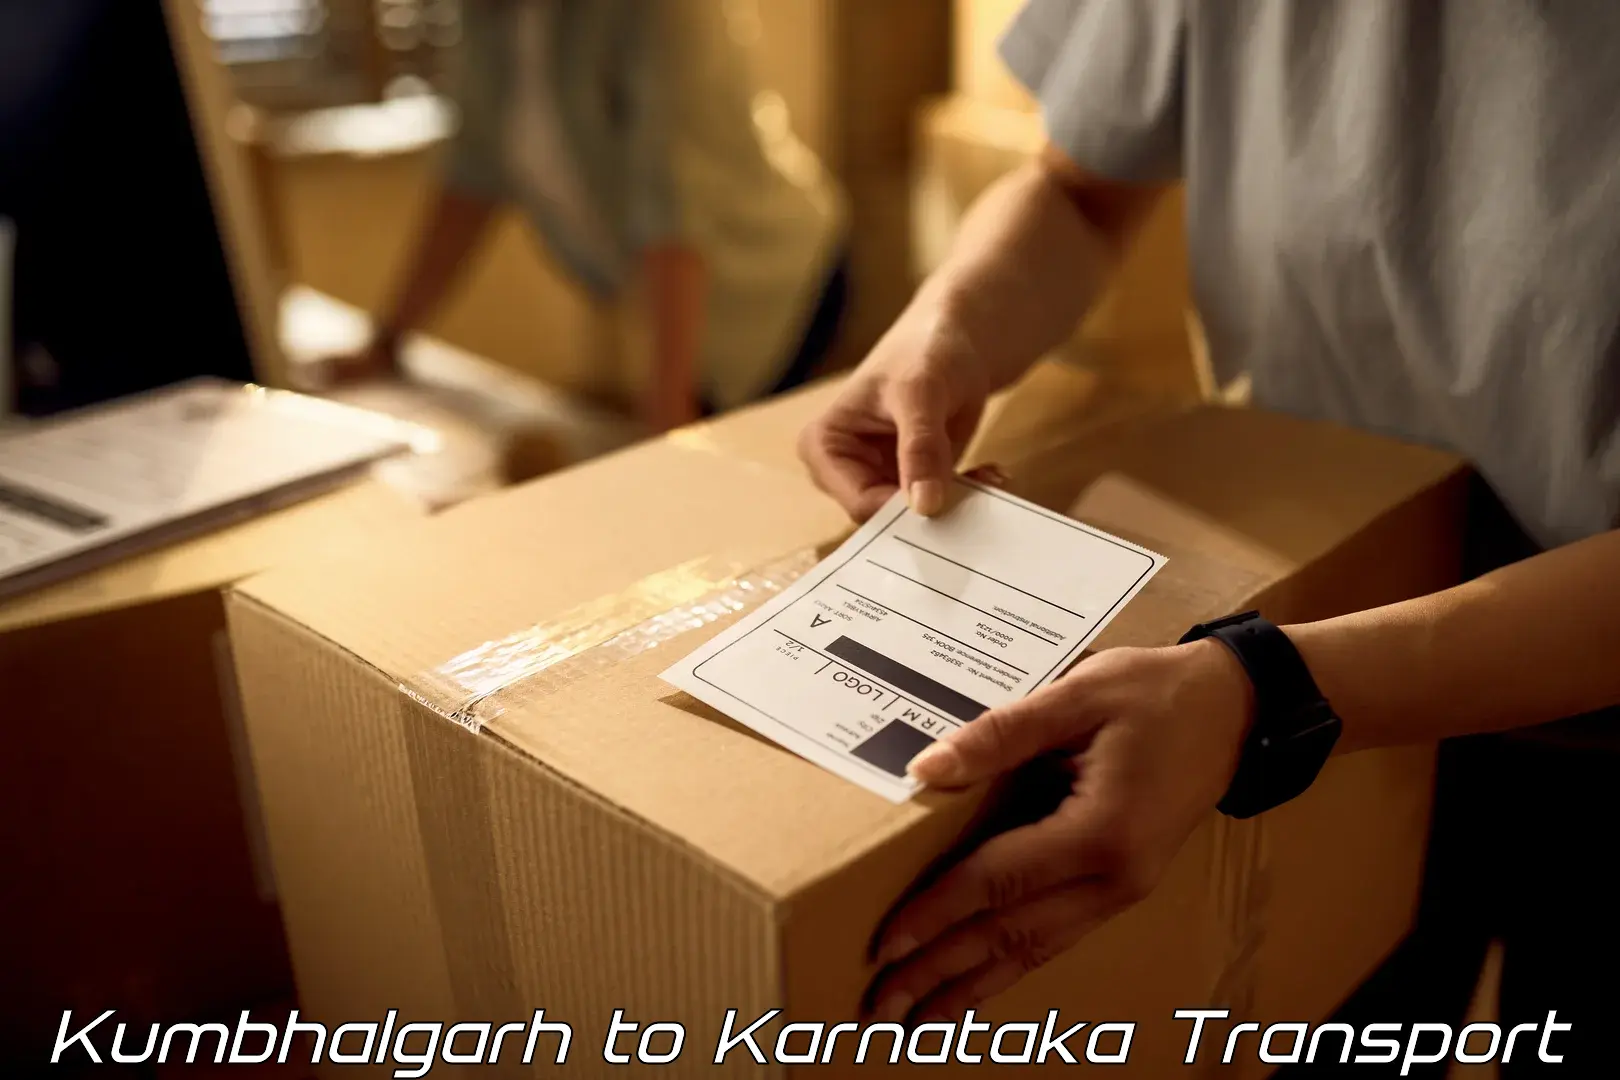 Furniture transport service Kumbhalgarh to Laxmeshwar